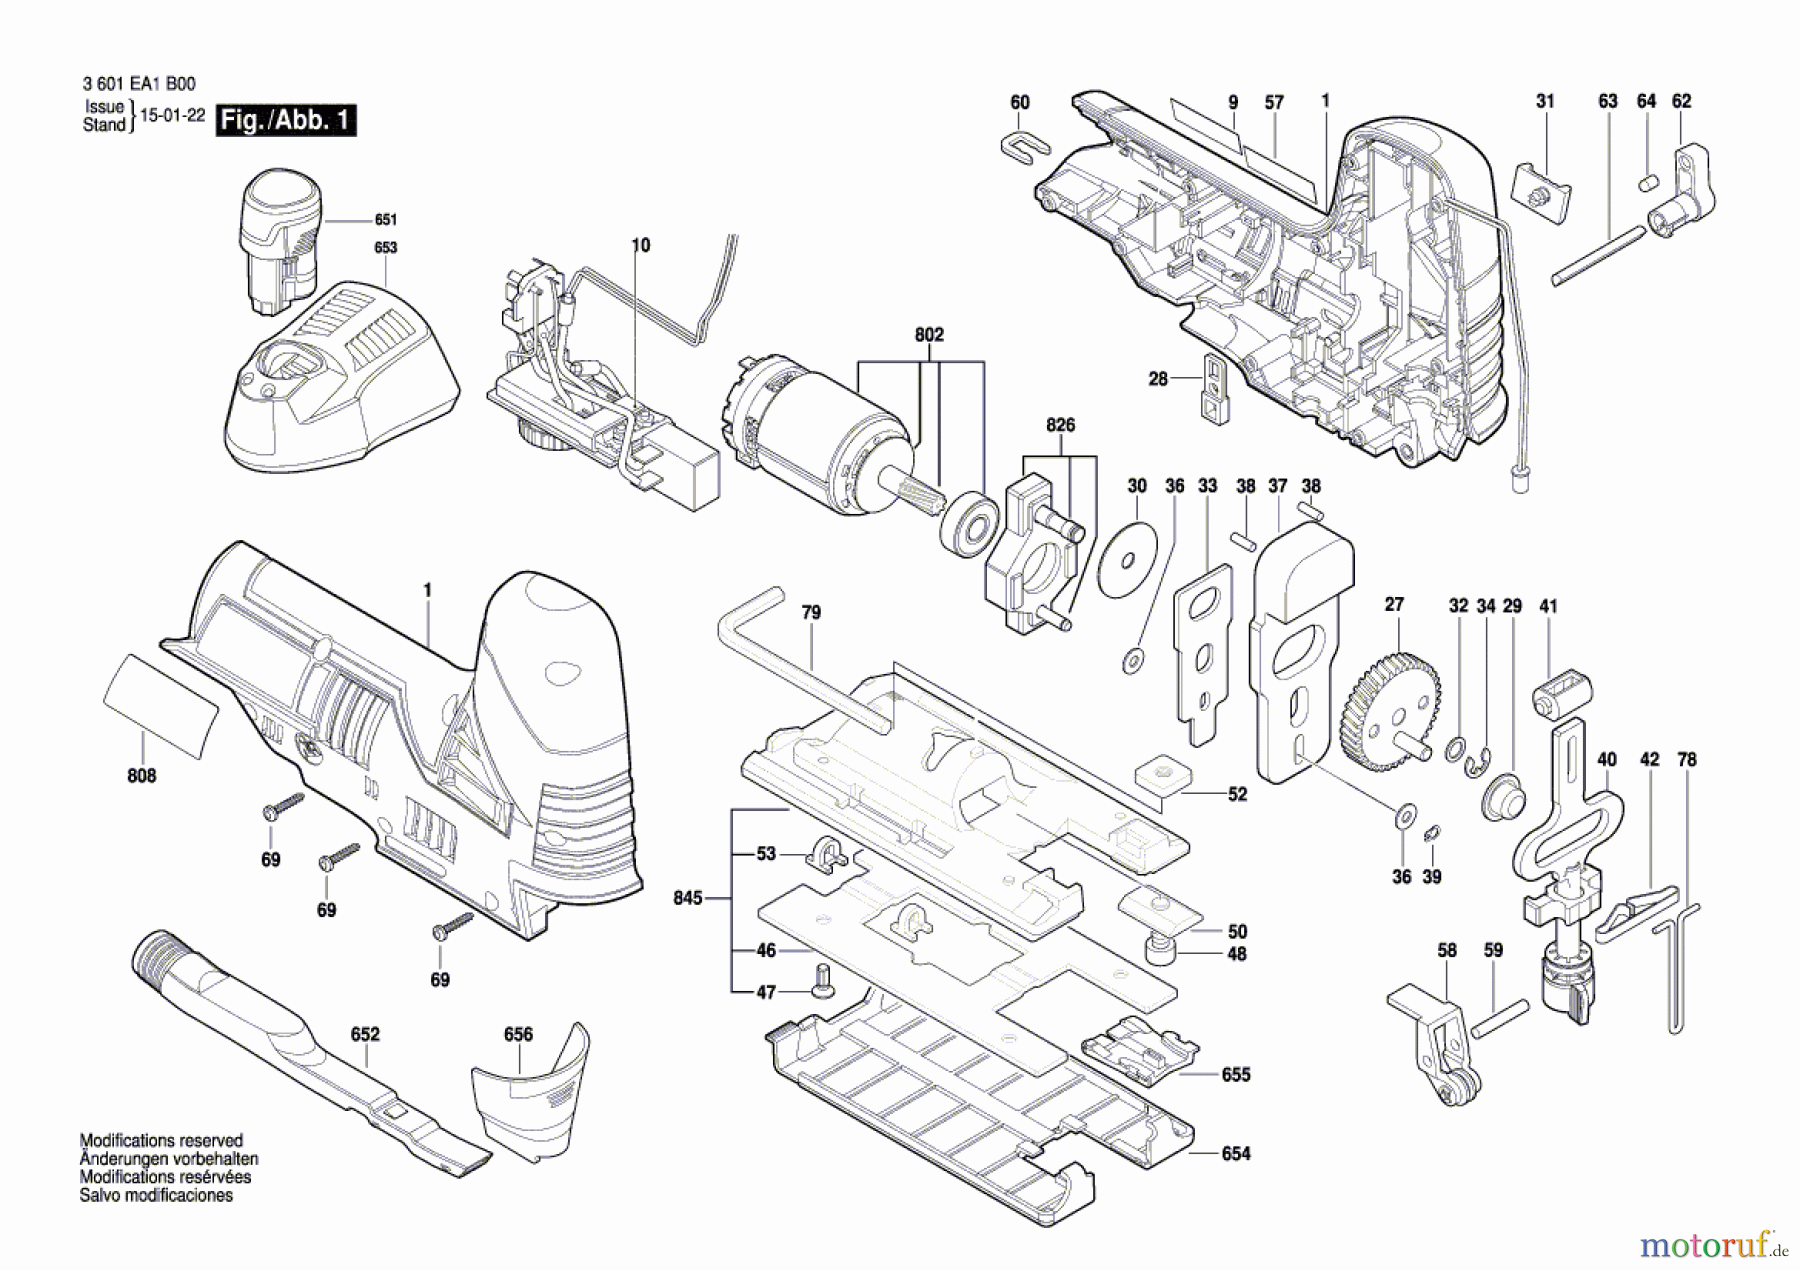  Bosch Akku Werkzeug Akku-Stichsäge A-ST 10,8 V Seite 1